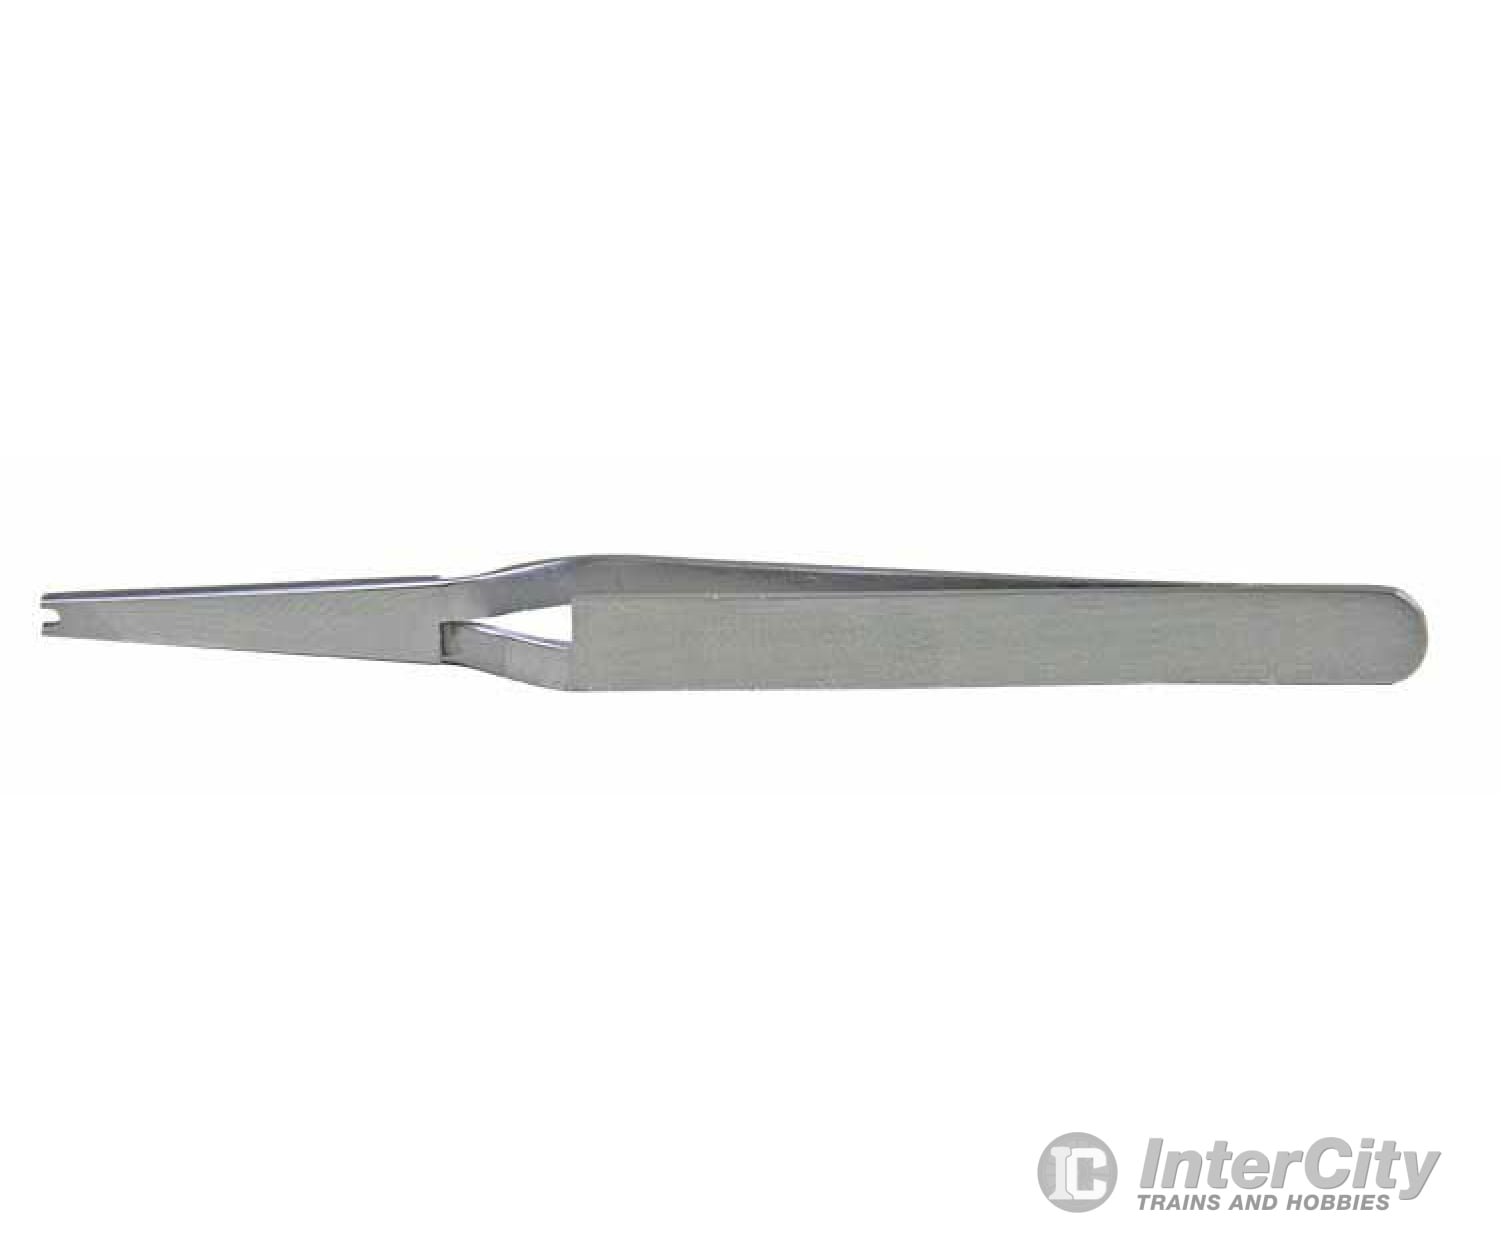 Kadee 1020 Stainless Steel Coupler & Special Purpose Tweezers - Default Title (IC-380-1020)